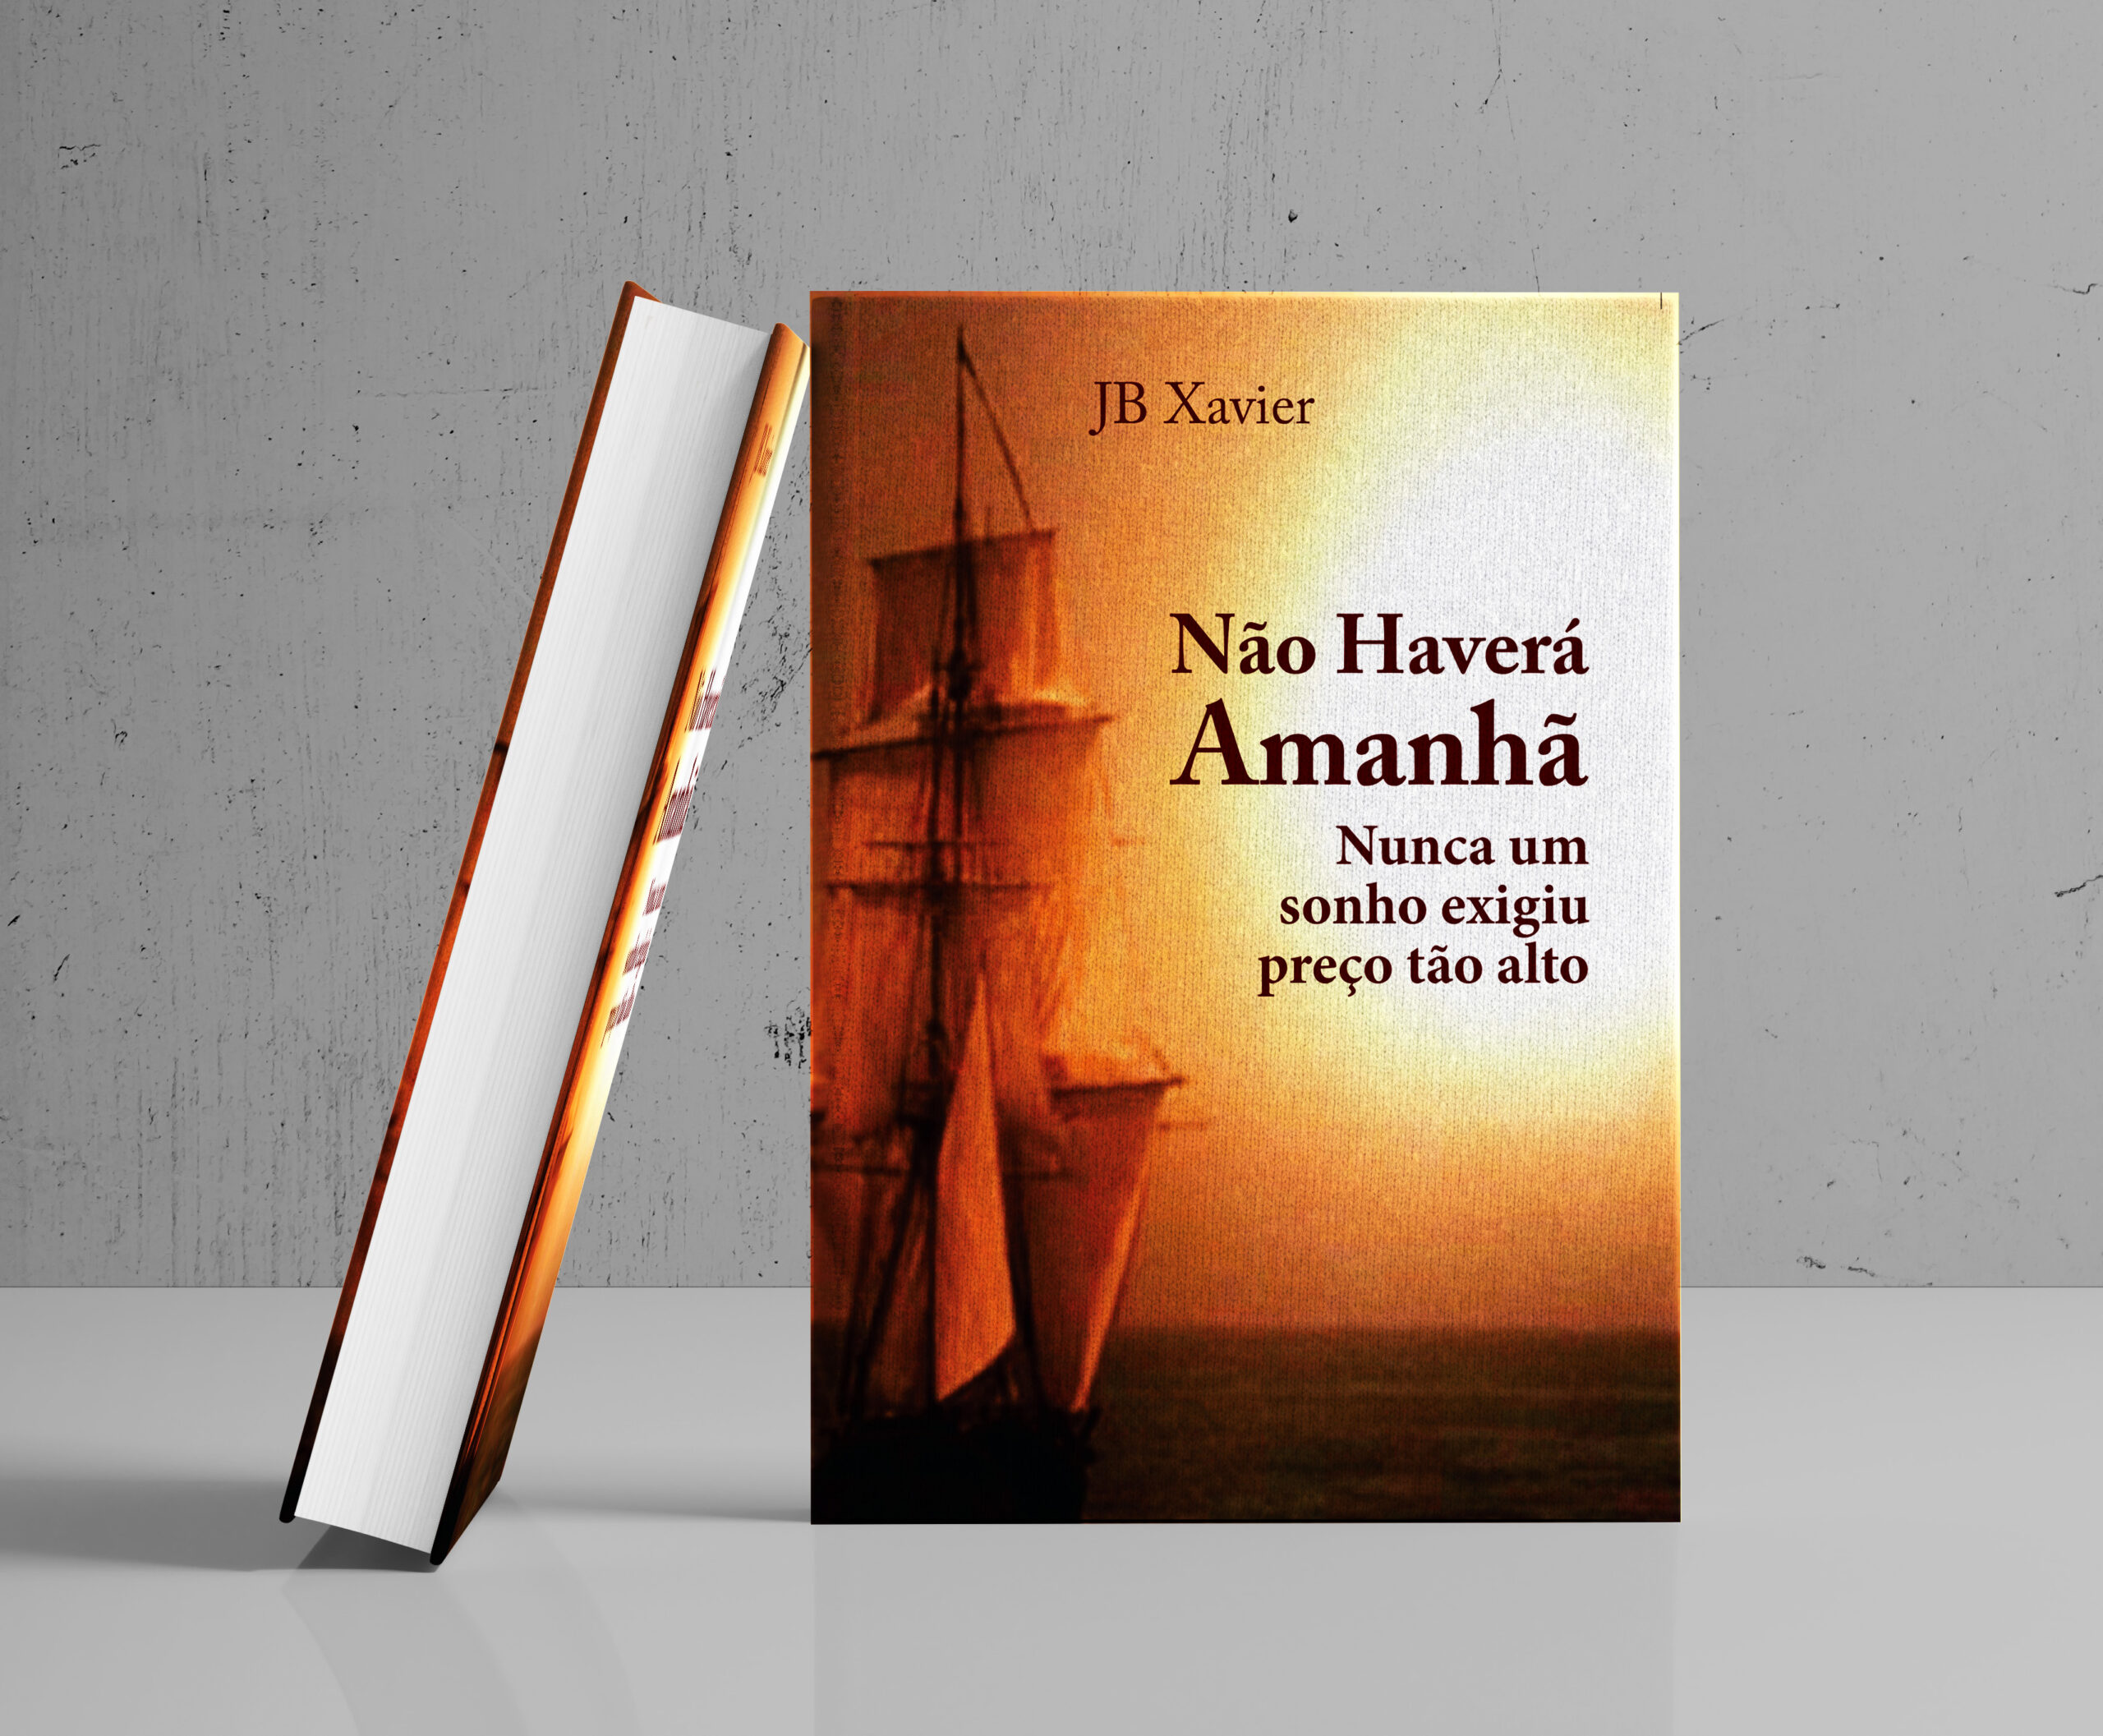 Capa do livro "Não Haverá Amanhã" publicado  em 2011 pela Tachion Editora. A capa é em tons de laranja com uma caravela navegando em direção ao Sol.